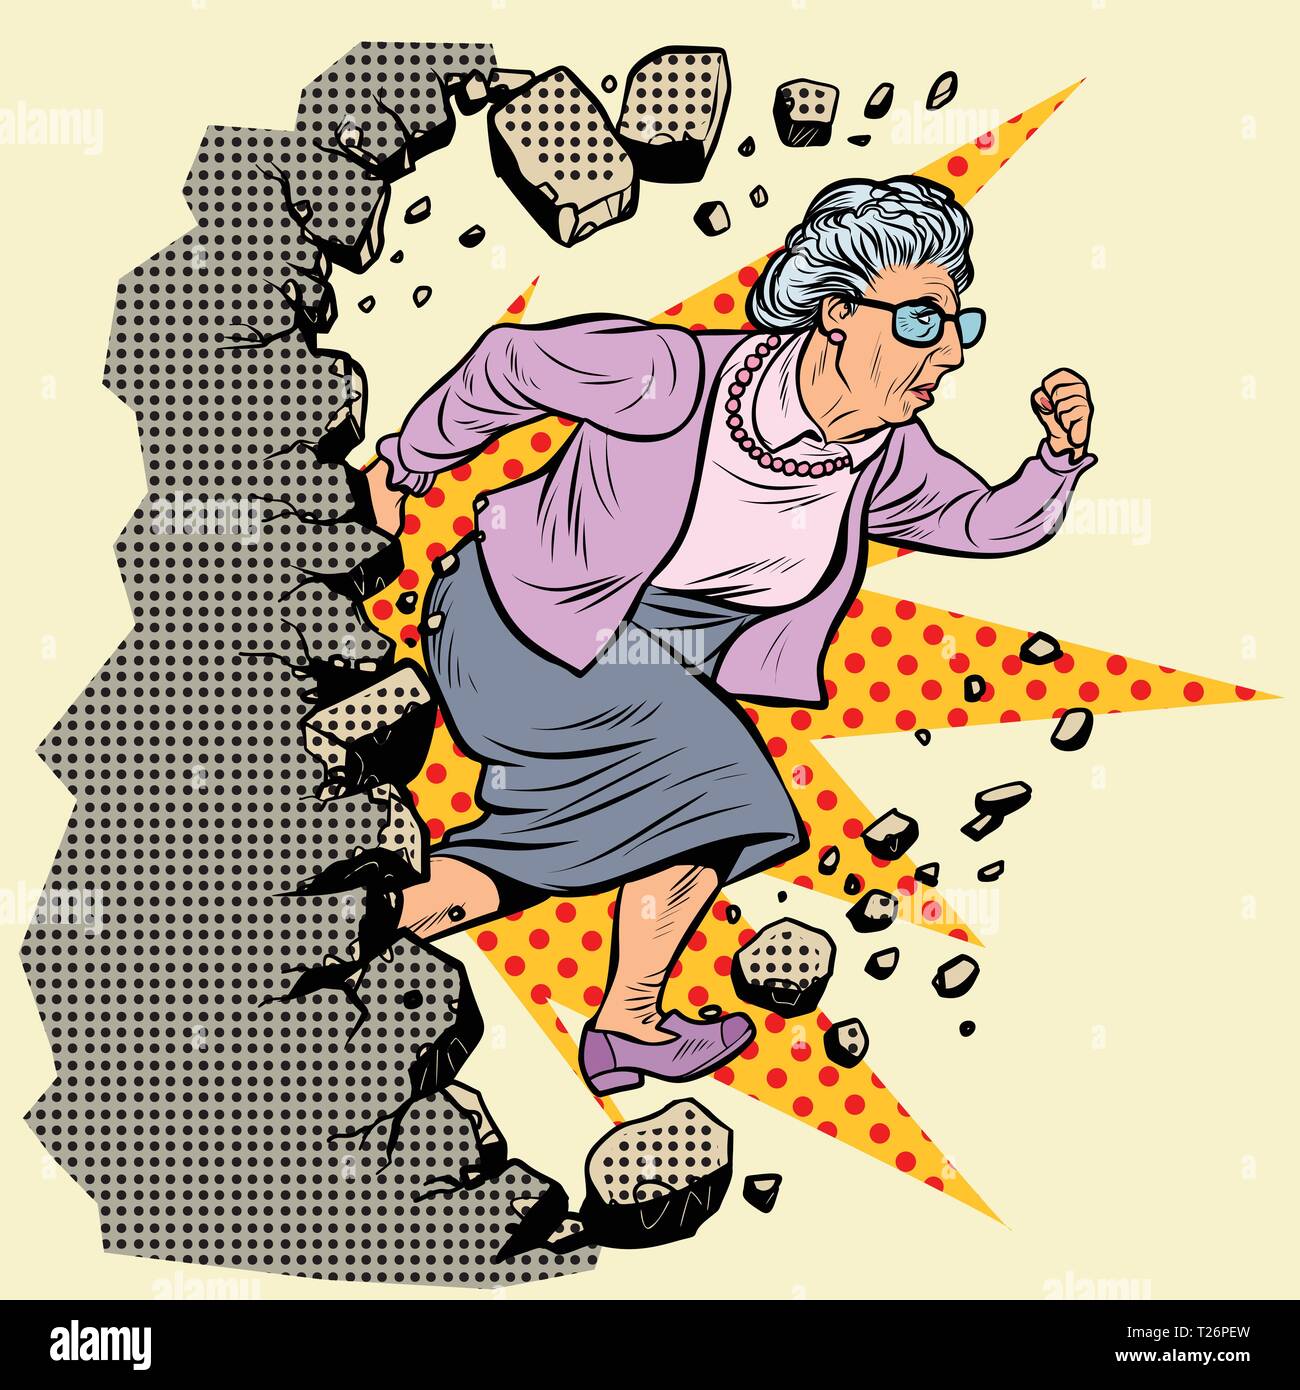 Aktiven alten Oma Rentner bricht die Wand von Stereotypen. Vorwärts bewegen, persönliche Entwicklung. Pop Art retro Vektor illustration Vintage kitsch Stock Vektor